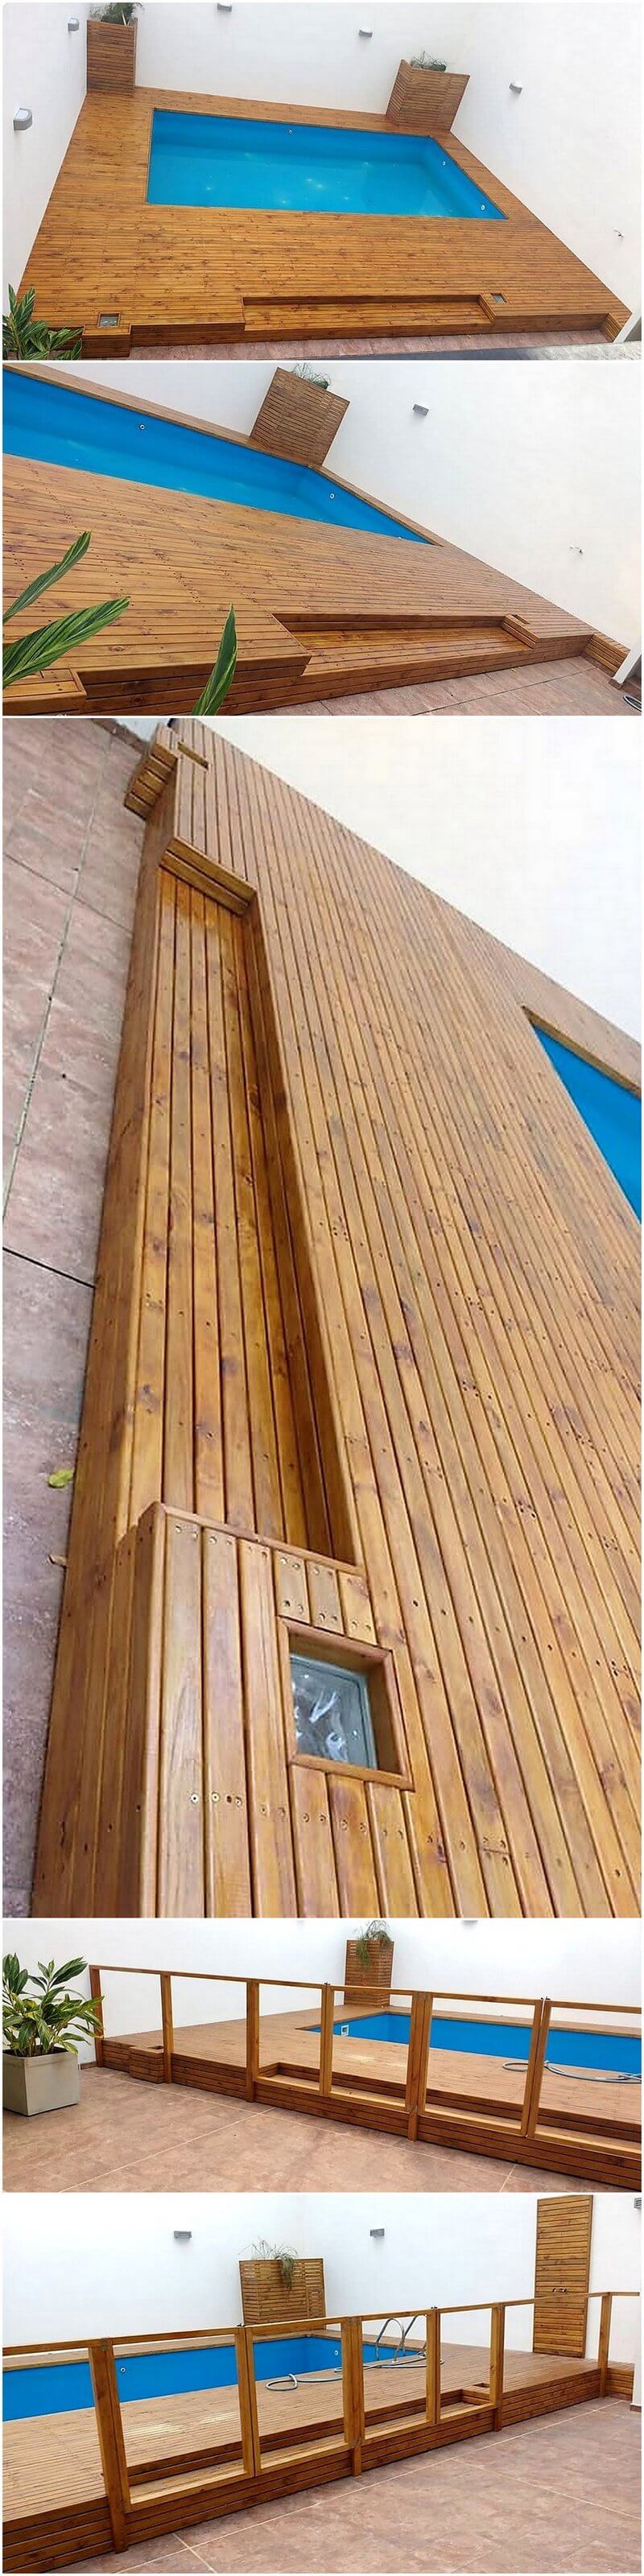 wood pallet pool plan